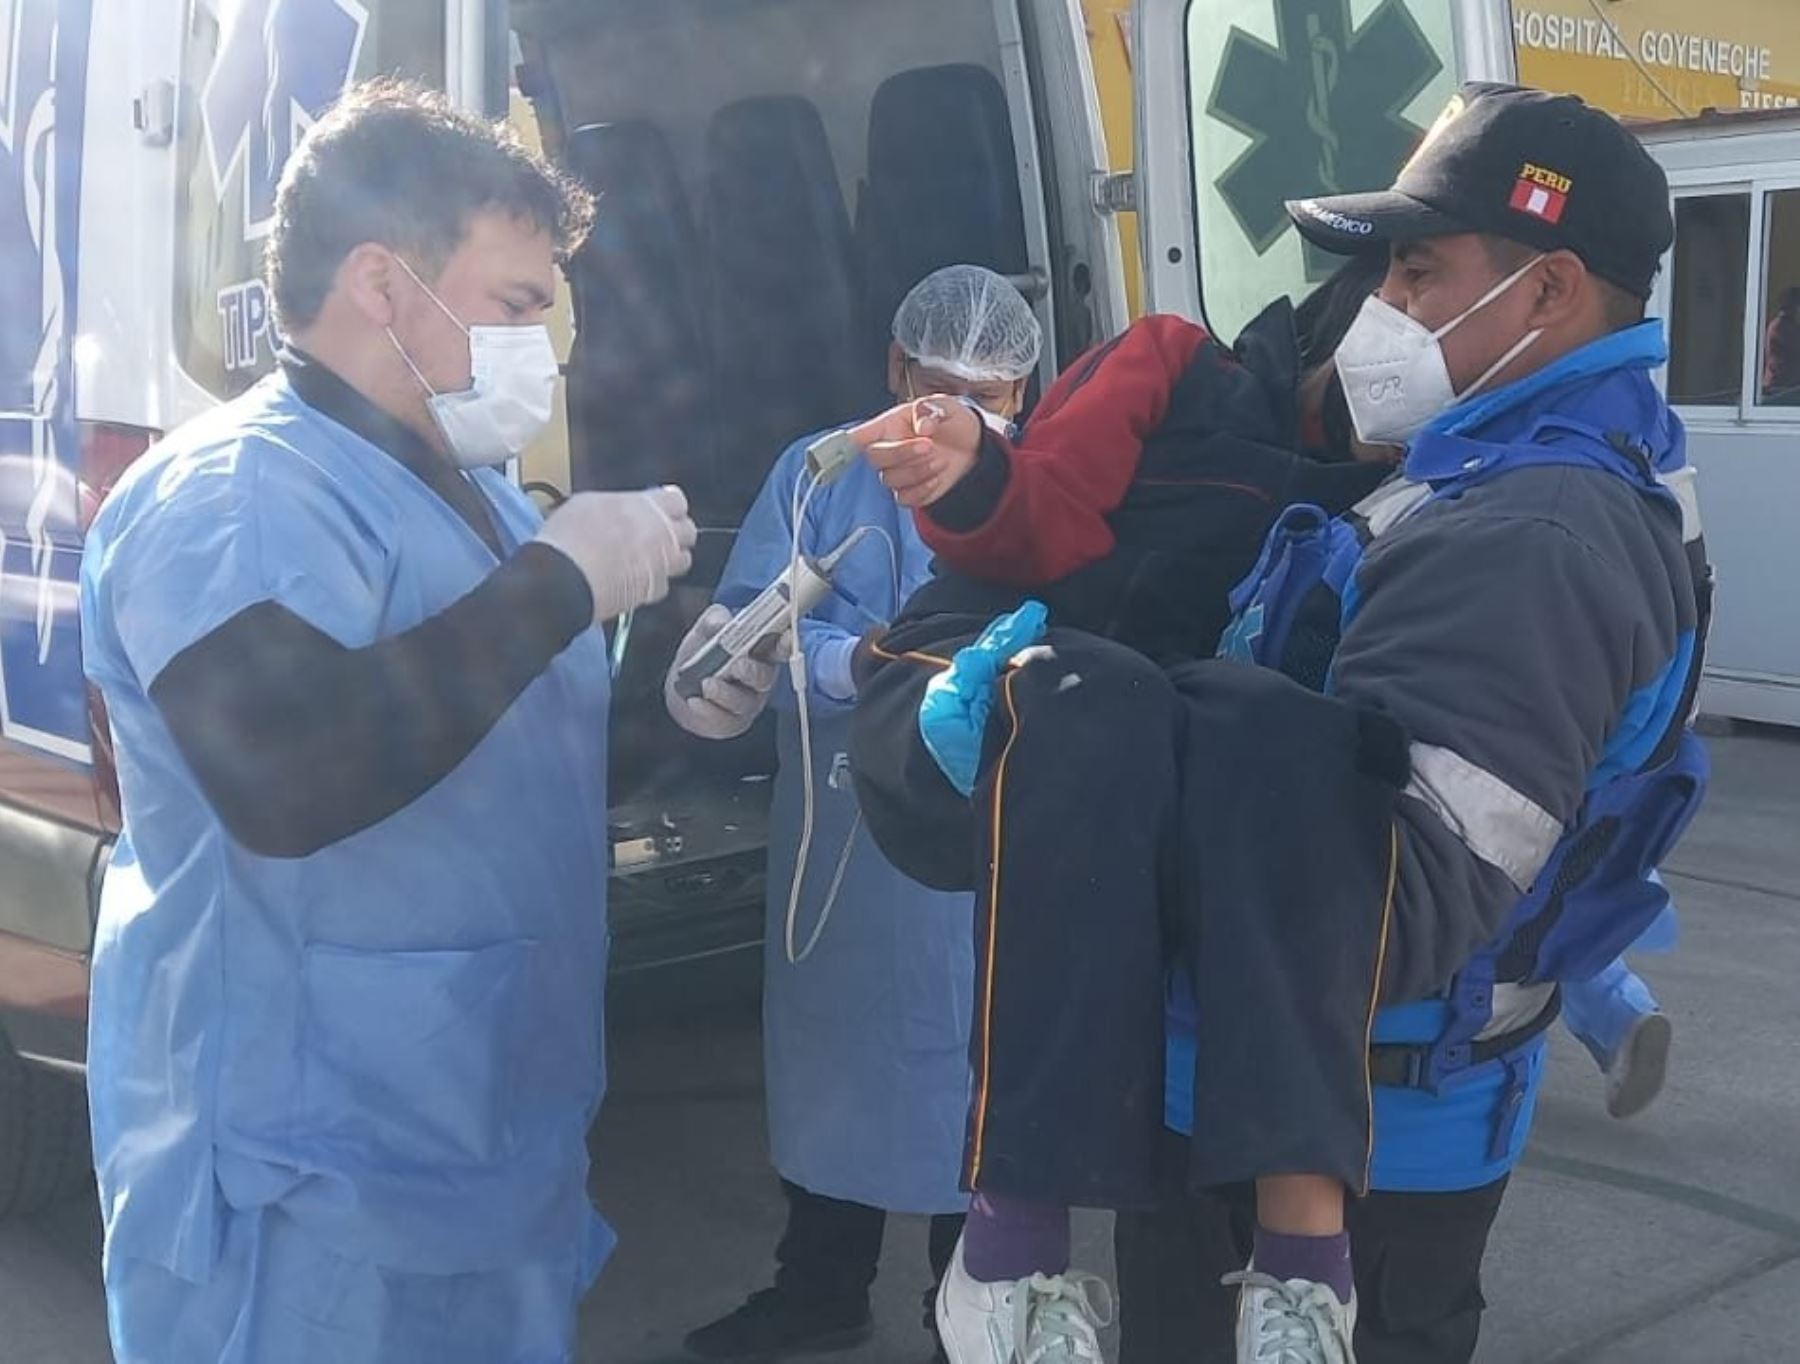 Por lo menos 30 personas resultaron heridas en Arequipa, entre ellas 17 escolares, a consecuencia del choque de una camioneta coaster contra una vivienda. El accidente ocurrió en el distrito de Miraflores.